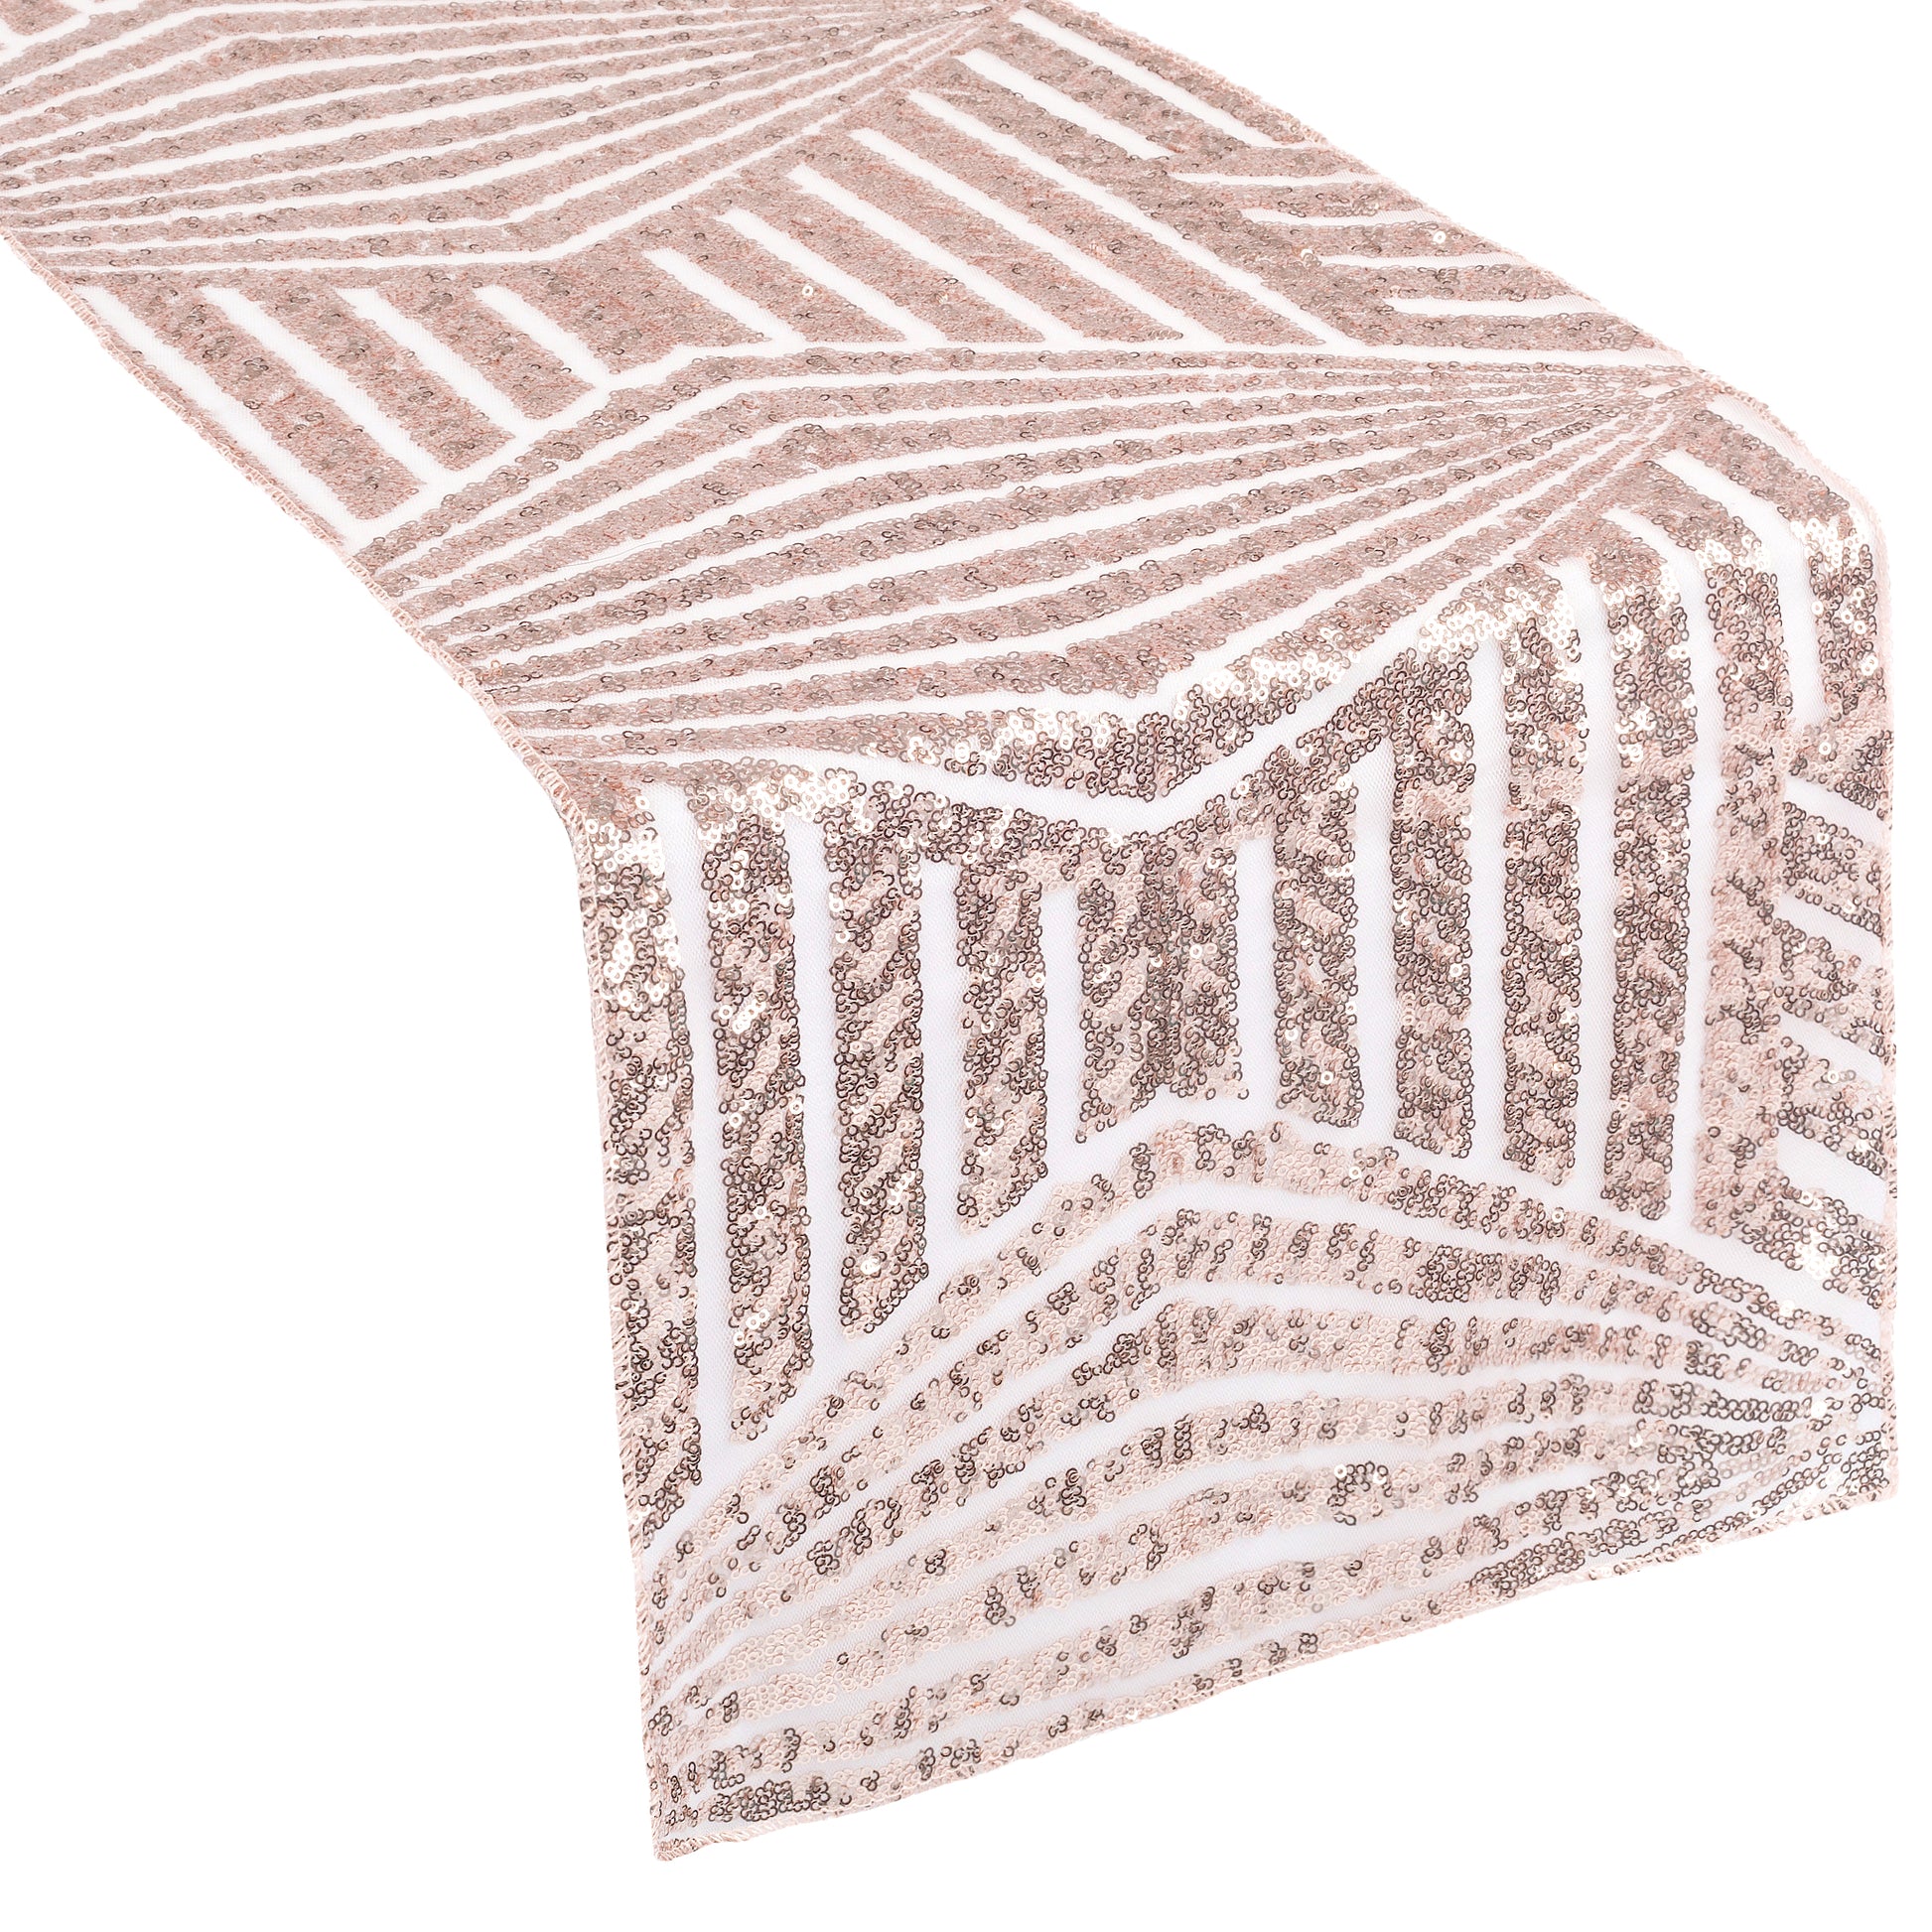 Geometric Glitz Art Deco Sequin Table Runner - Blush/Rose Gold - CV Linens